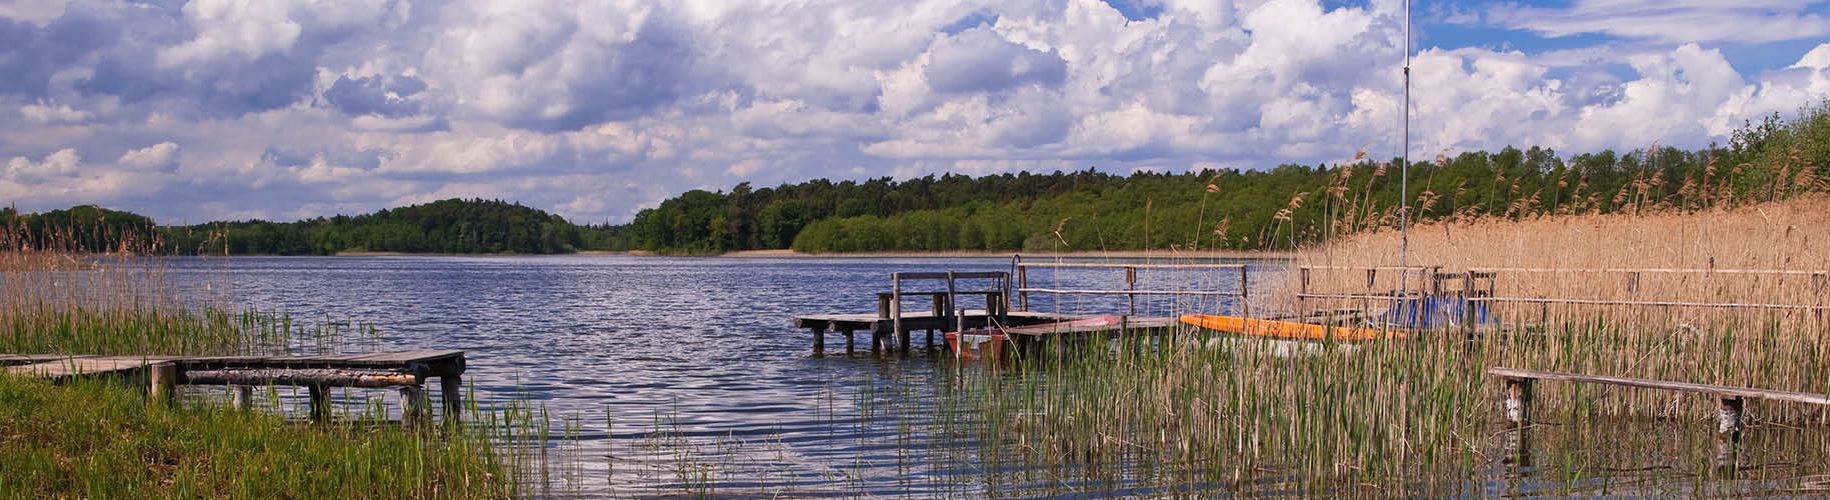 Naturpark Lauenburgische Seen Schleswig-Holstein Natur Landschaft Freizeit Naturliebhaber Schutzgebiete Naturparke Naturschutz Erholung Wald Wasser Schaalsee Groß Zecher